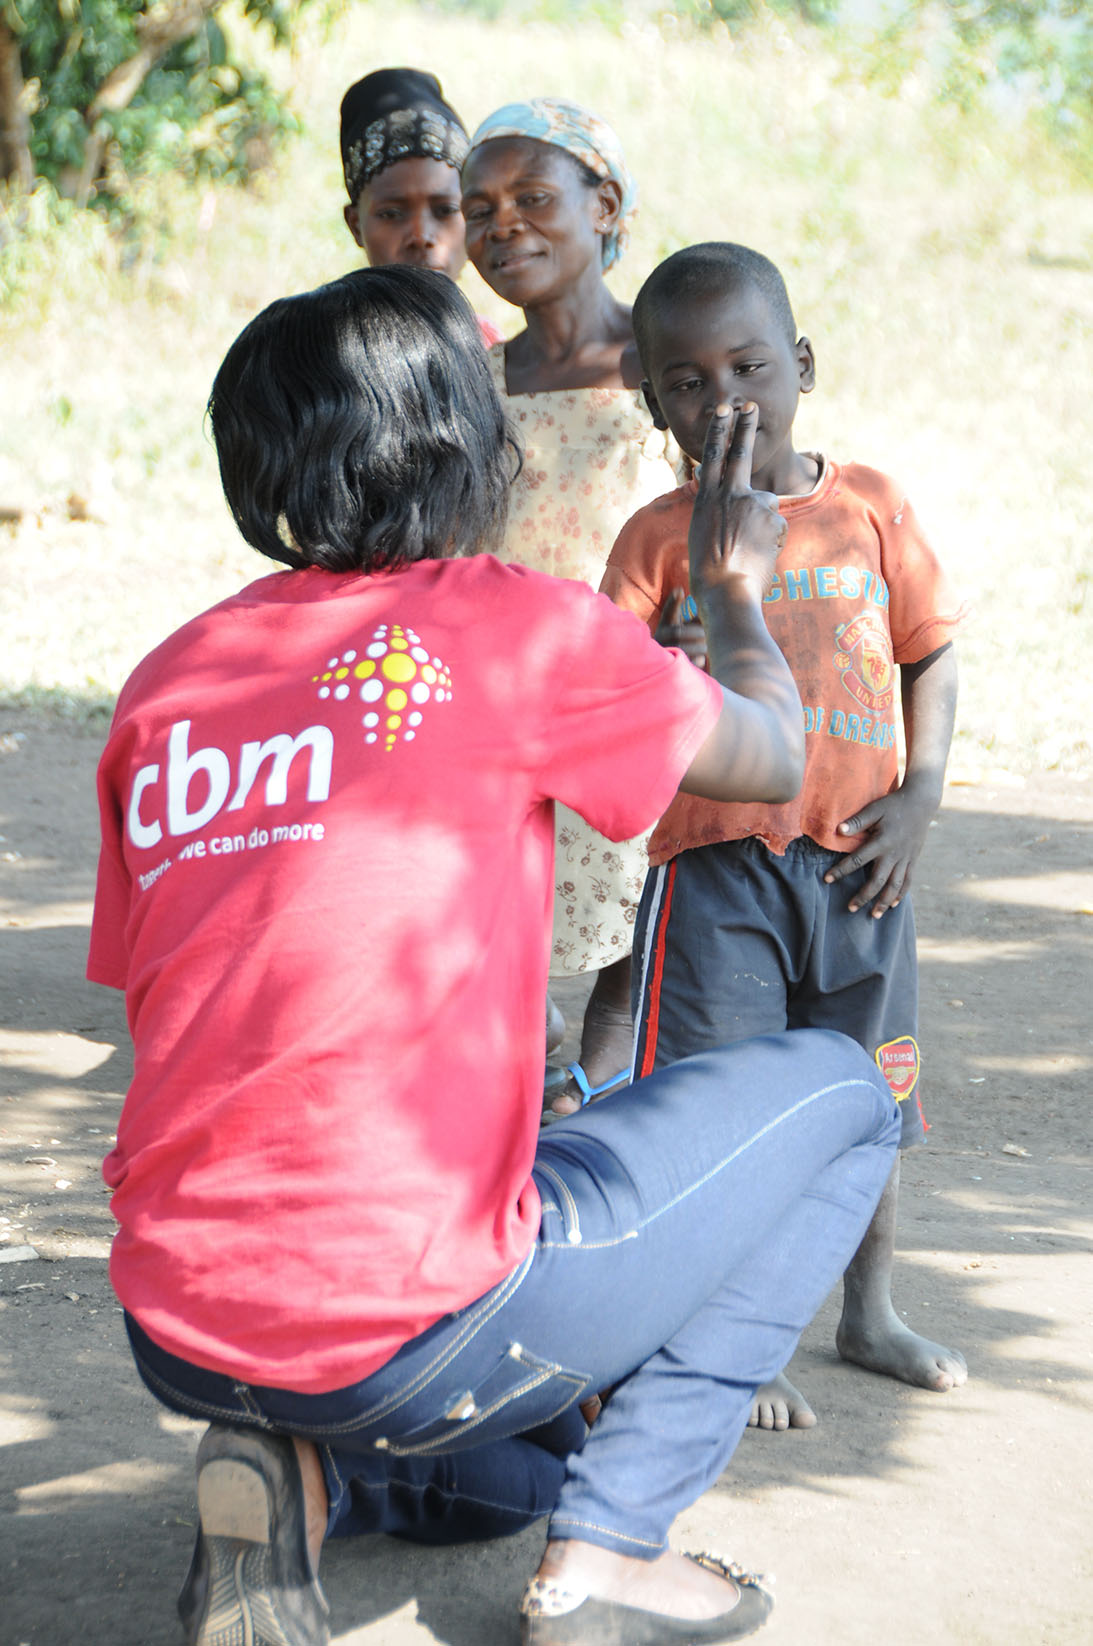 Eine Frau ist in der Hocke und untersucht mit Fingerübungen die Sehkraft eines Knaben aus Uganda. Im Hintergrund schauen zwei Frauen zu.